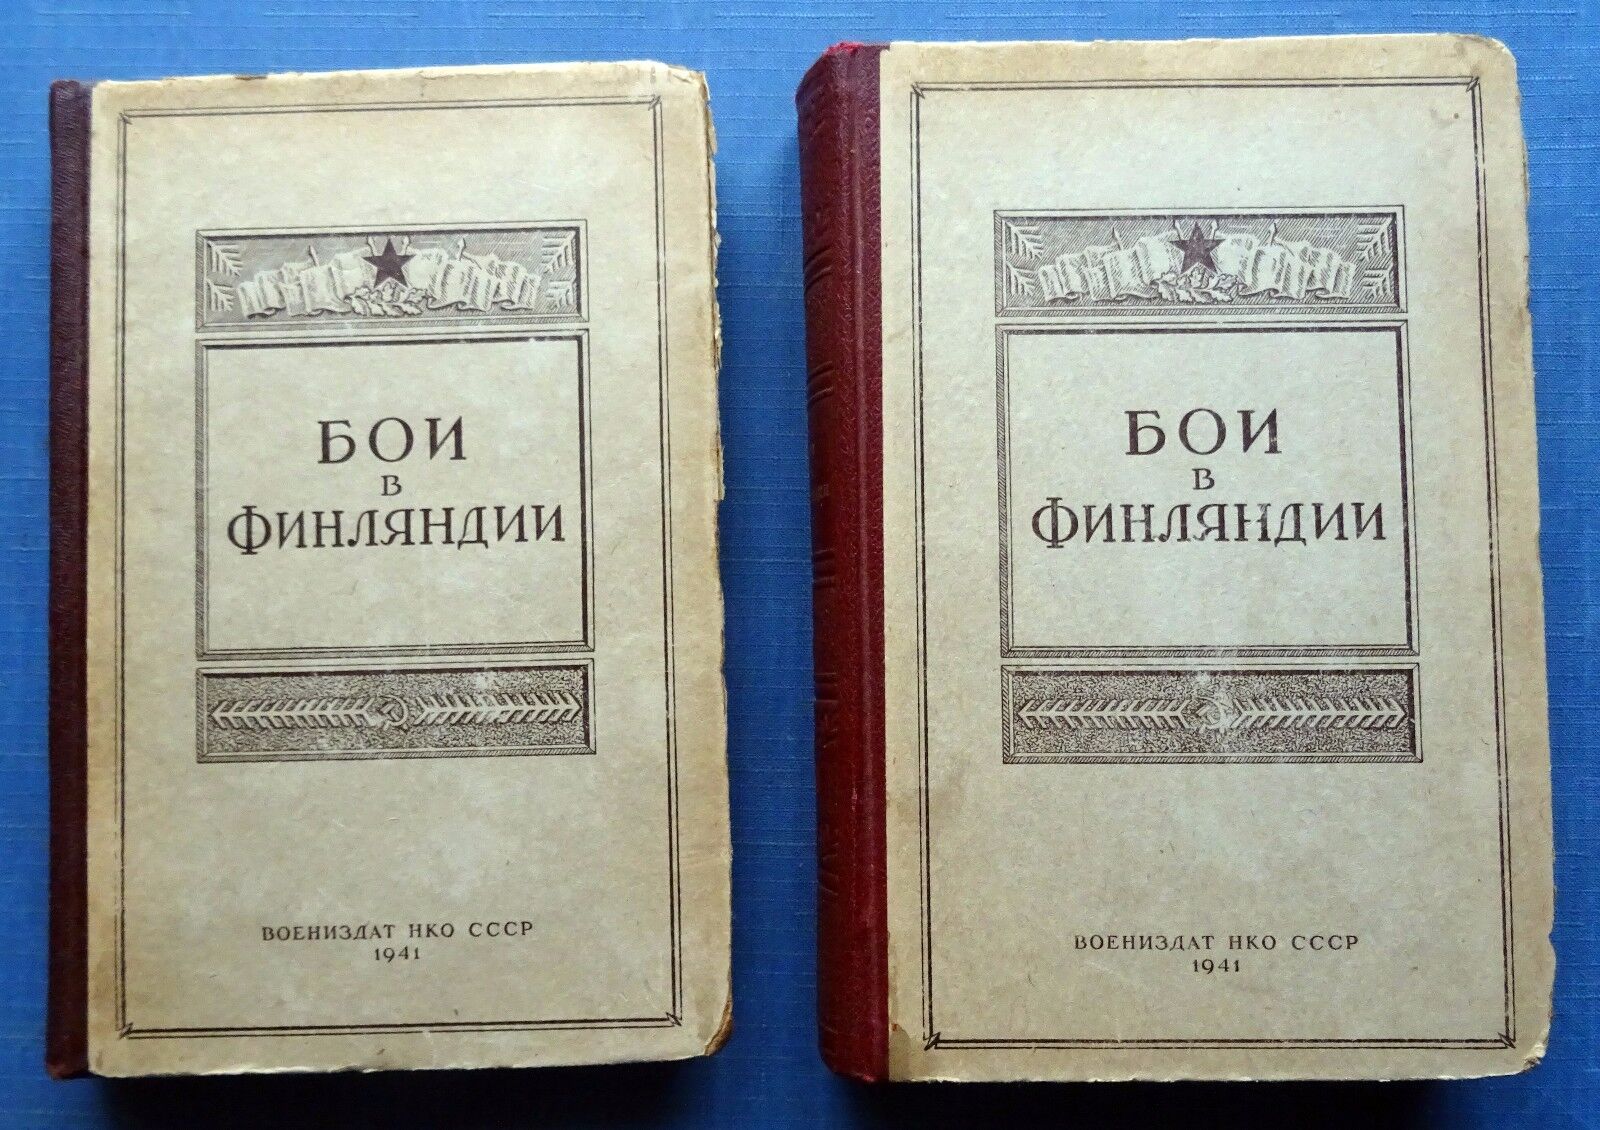 1941 Бои в Финляндии Russian Set 2 Vintage Military Books Fights in Finland WW2